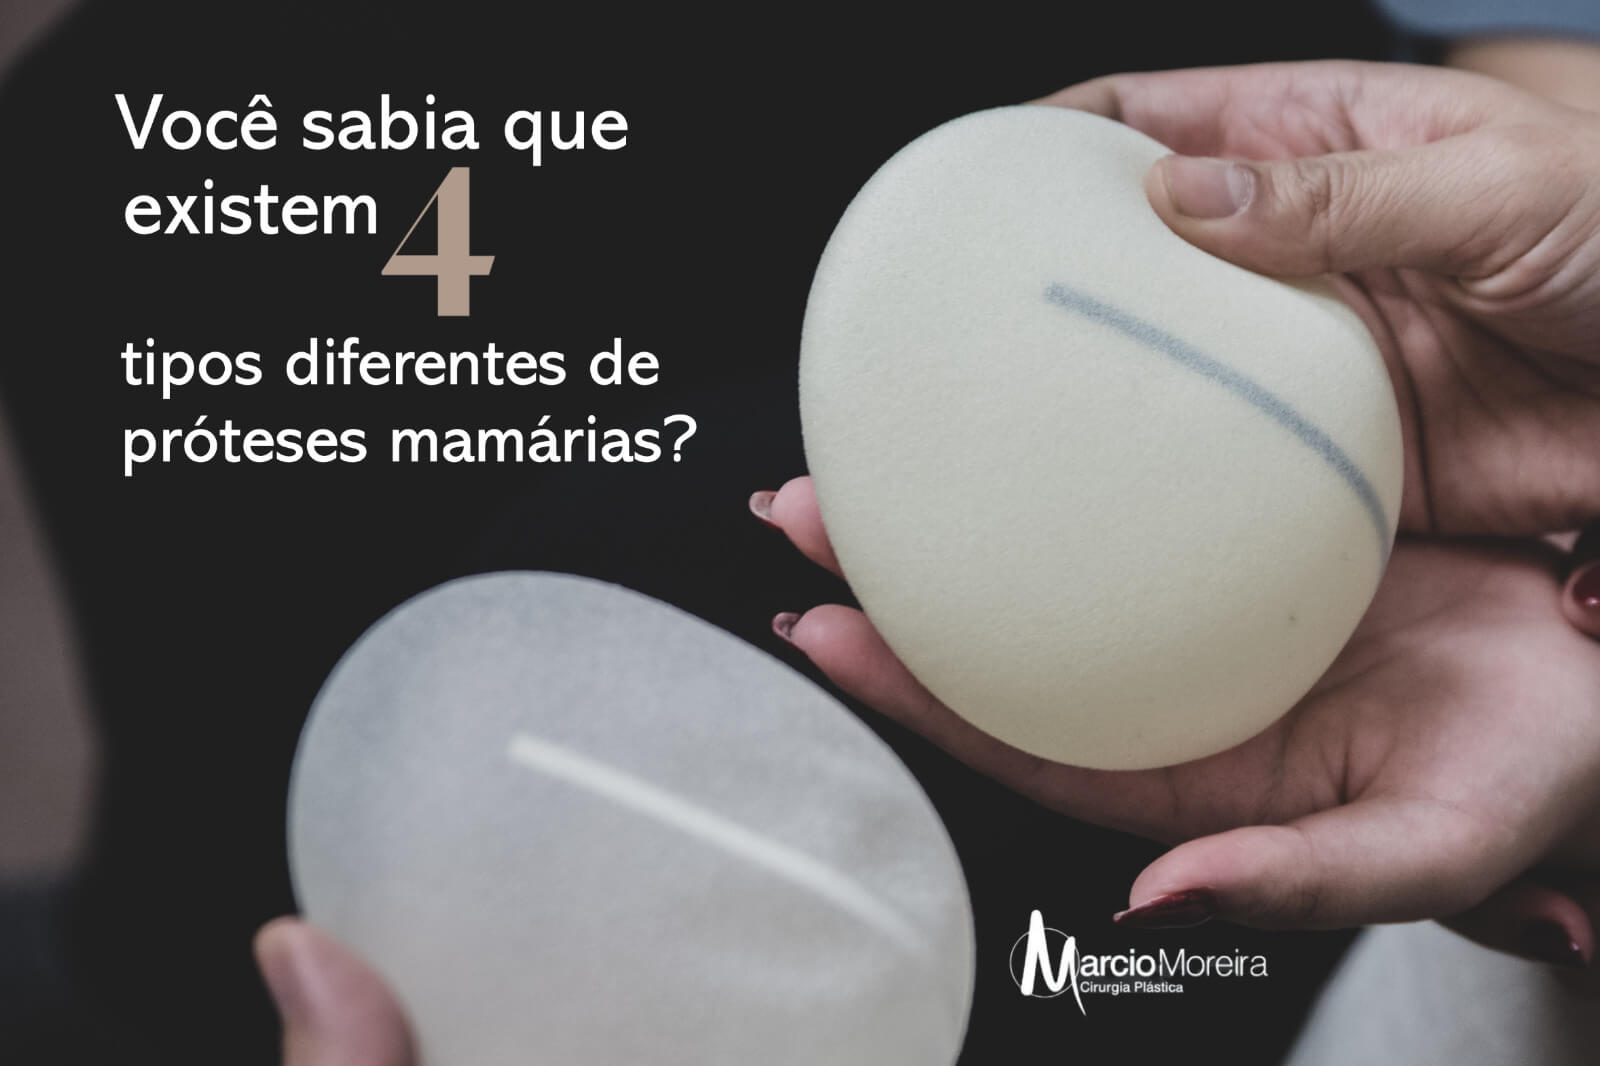 Você sabia que existem 4 tipos diferentes de próteses mamárias?